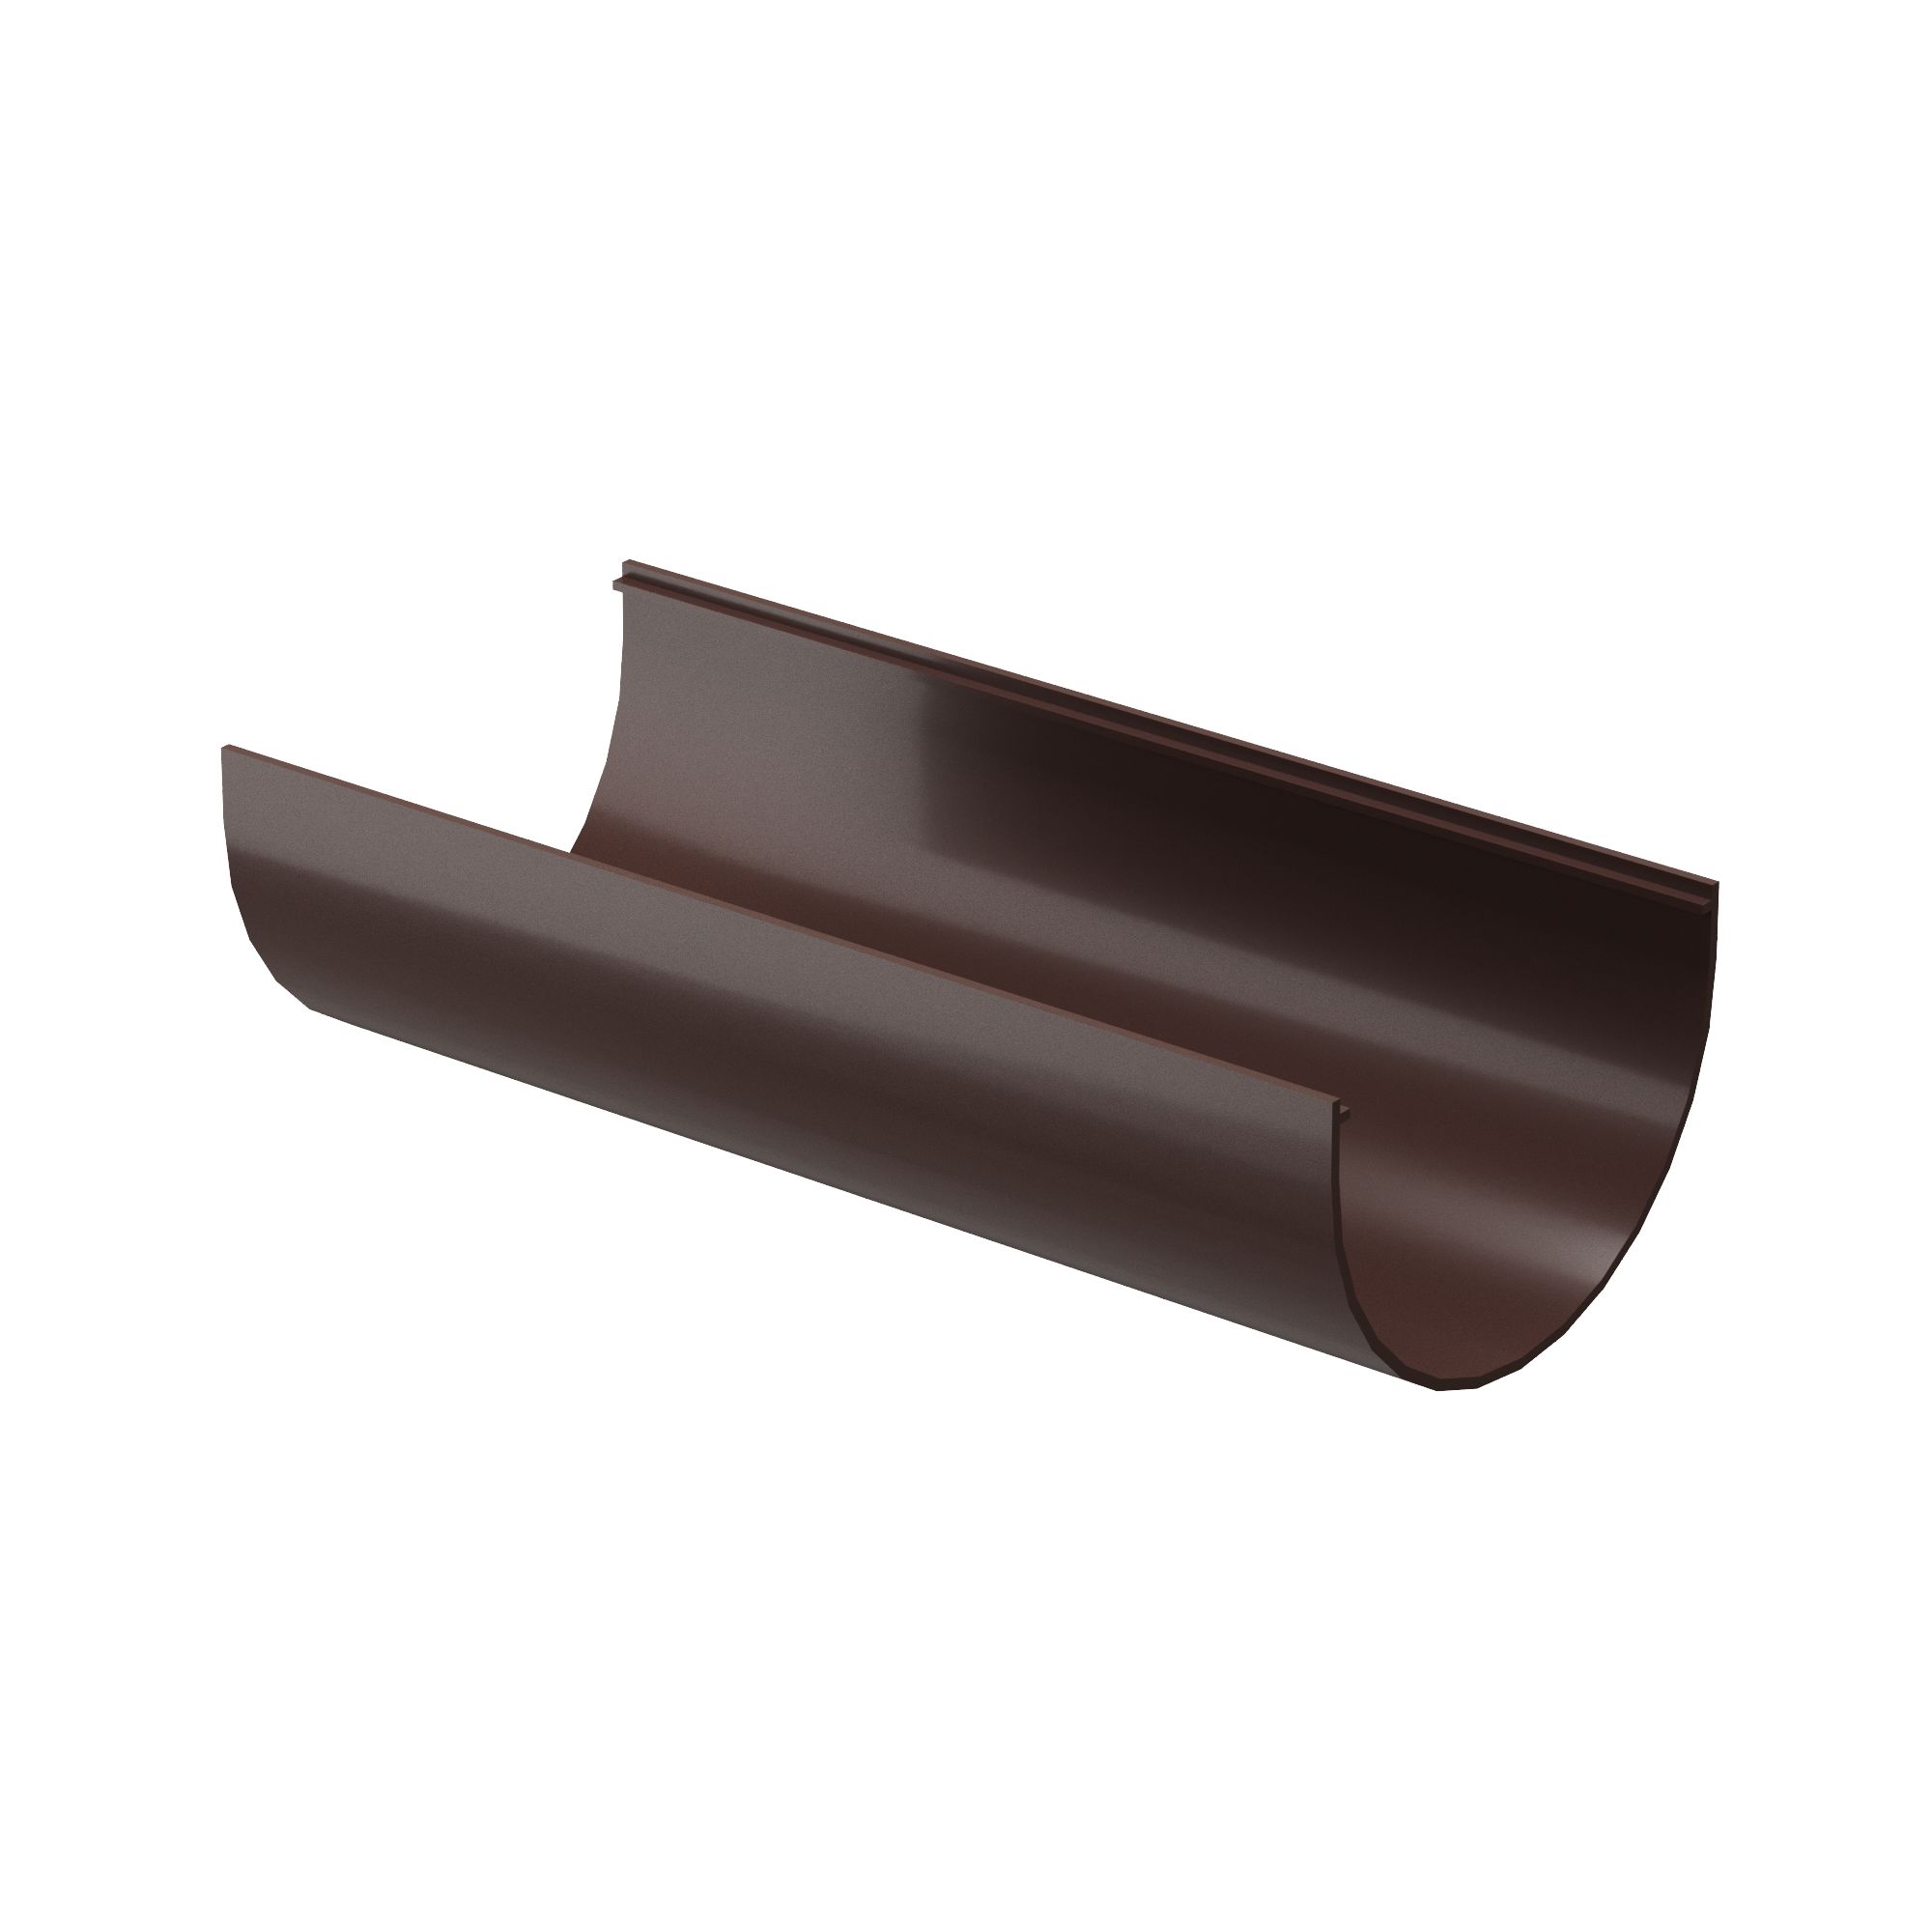 Желоб водосточный пластиковый 3м Docke Premium, Желоб водосточный 3м темно-коричневый шоколад ПВХ